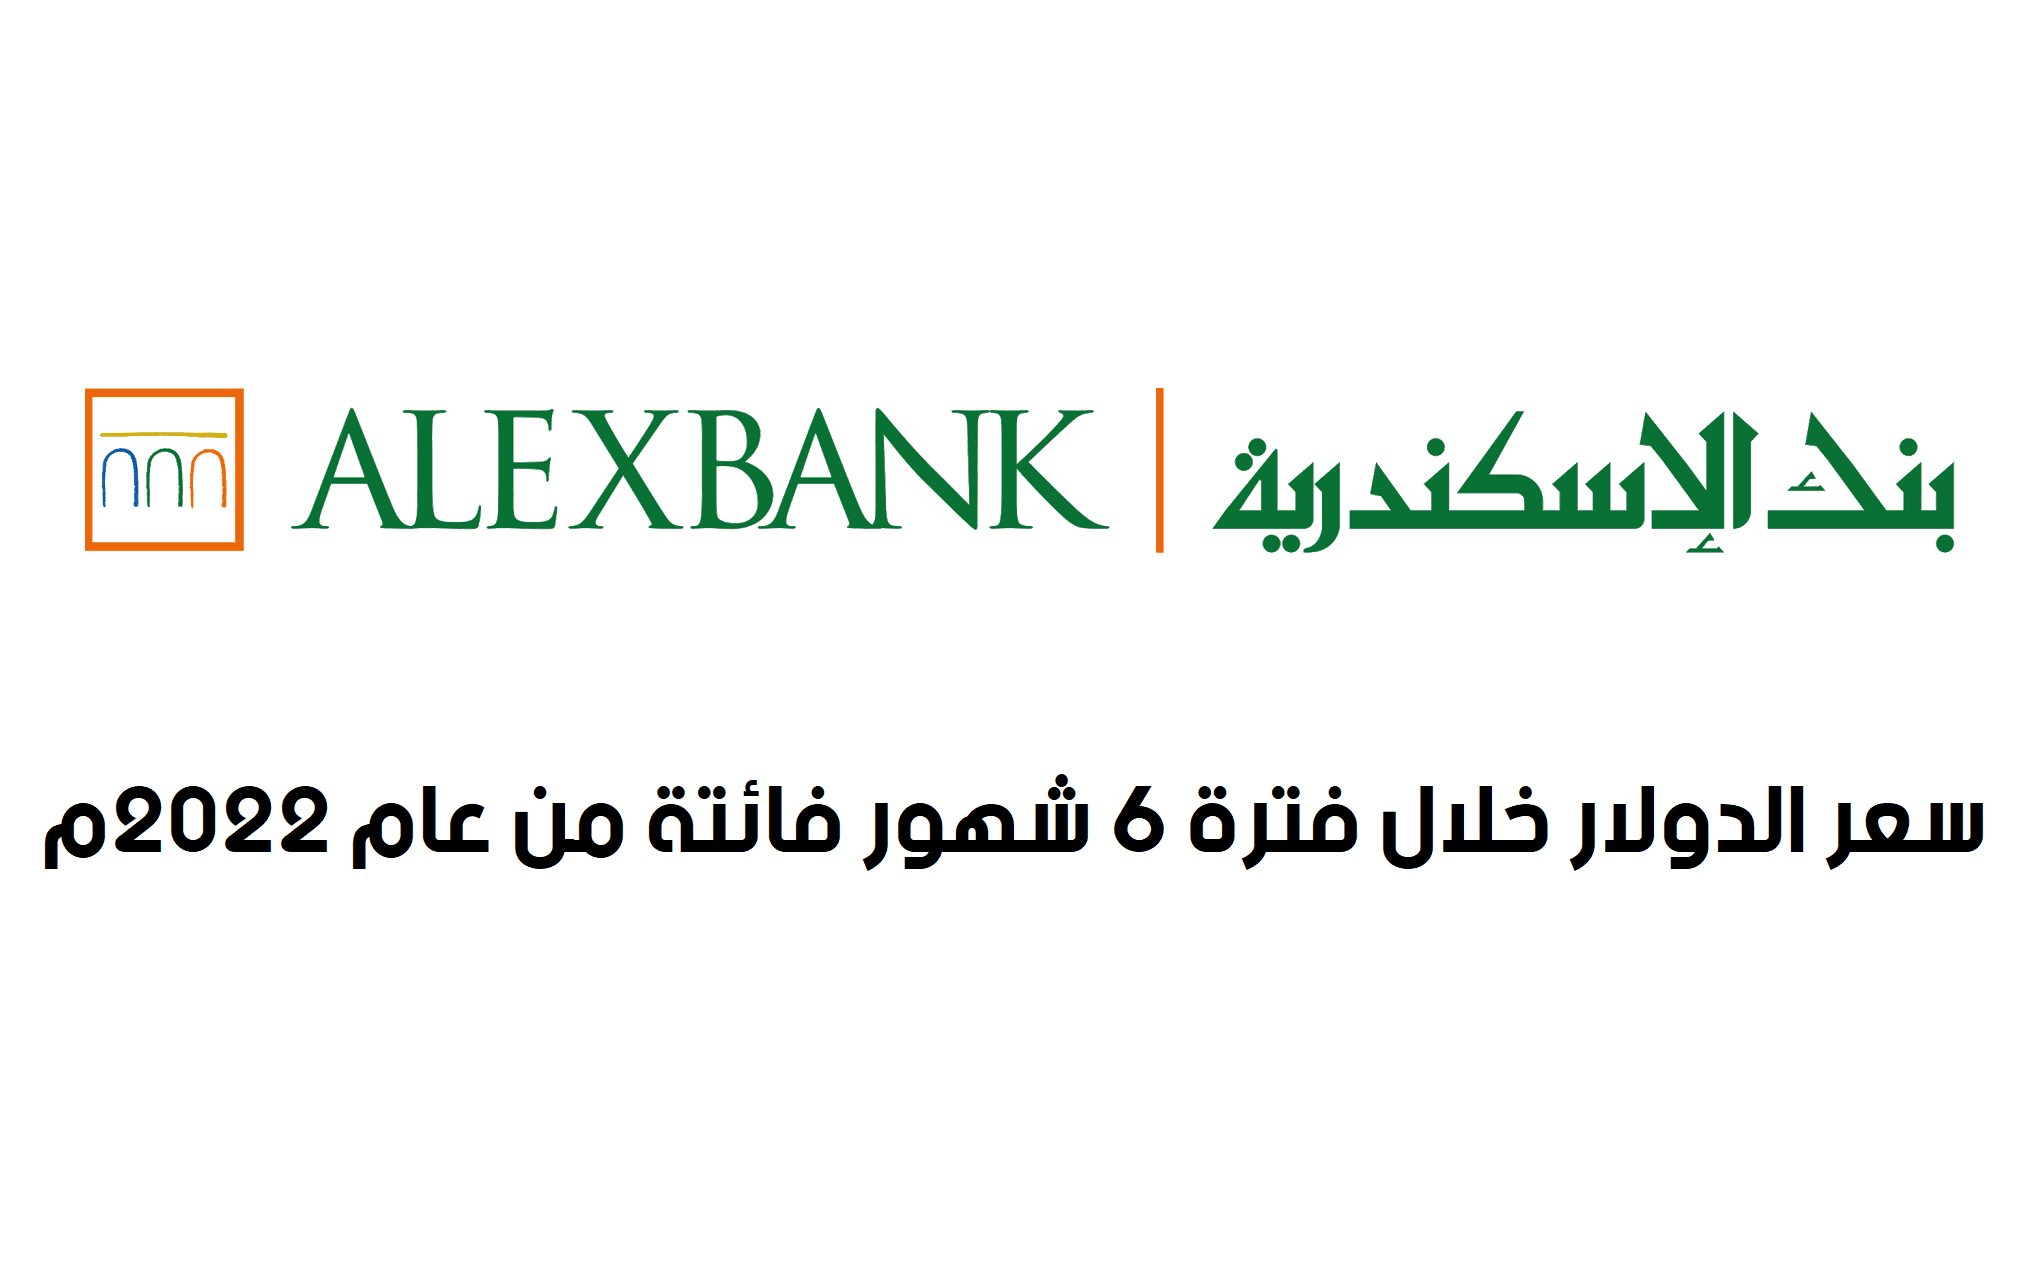 سعر الدولار اليوم في بنك الاسكندرية خلال فترة 6 شهور فائتة من عام 2022م